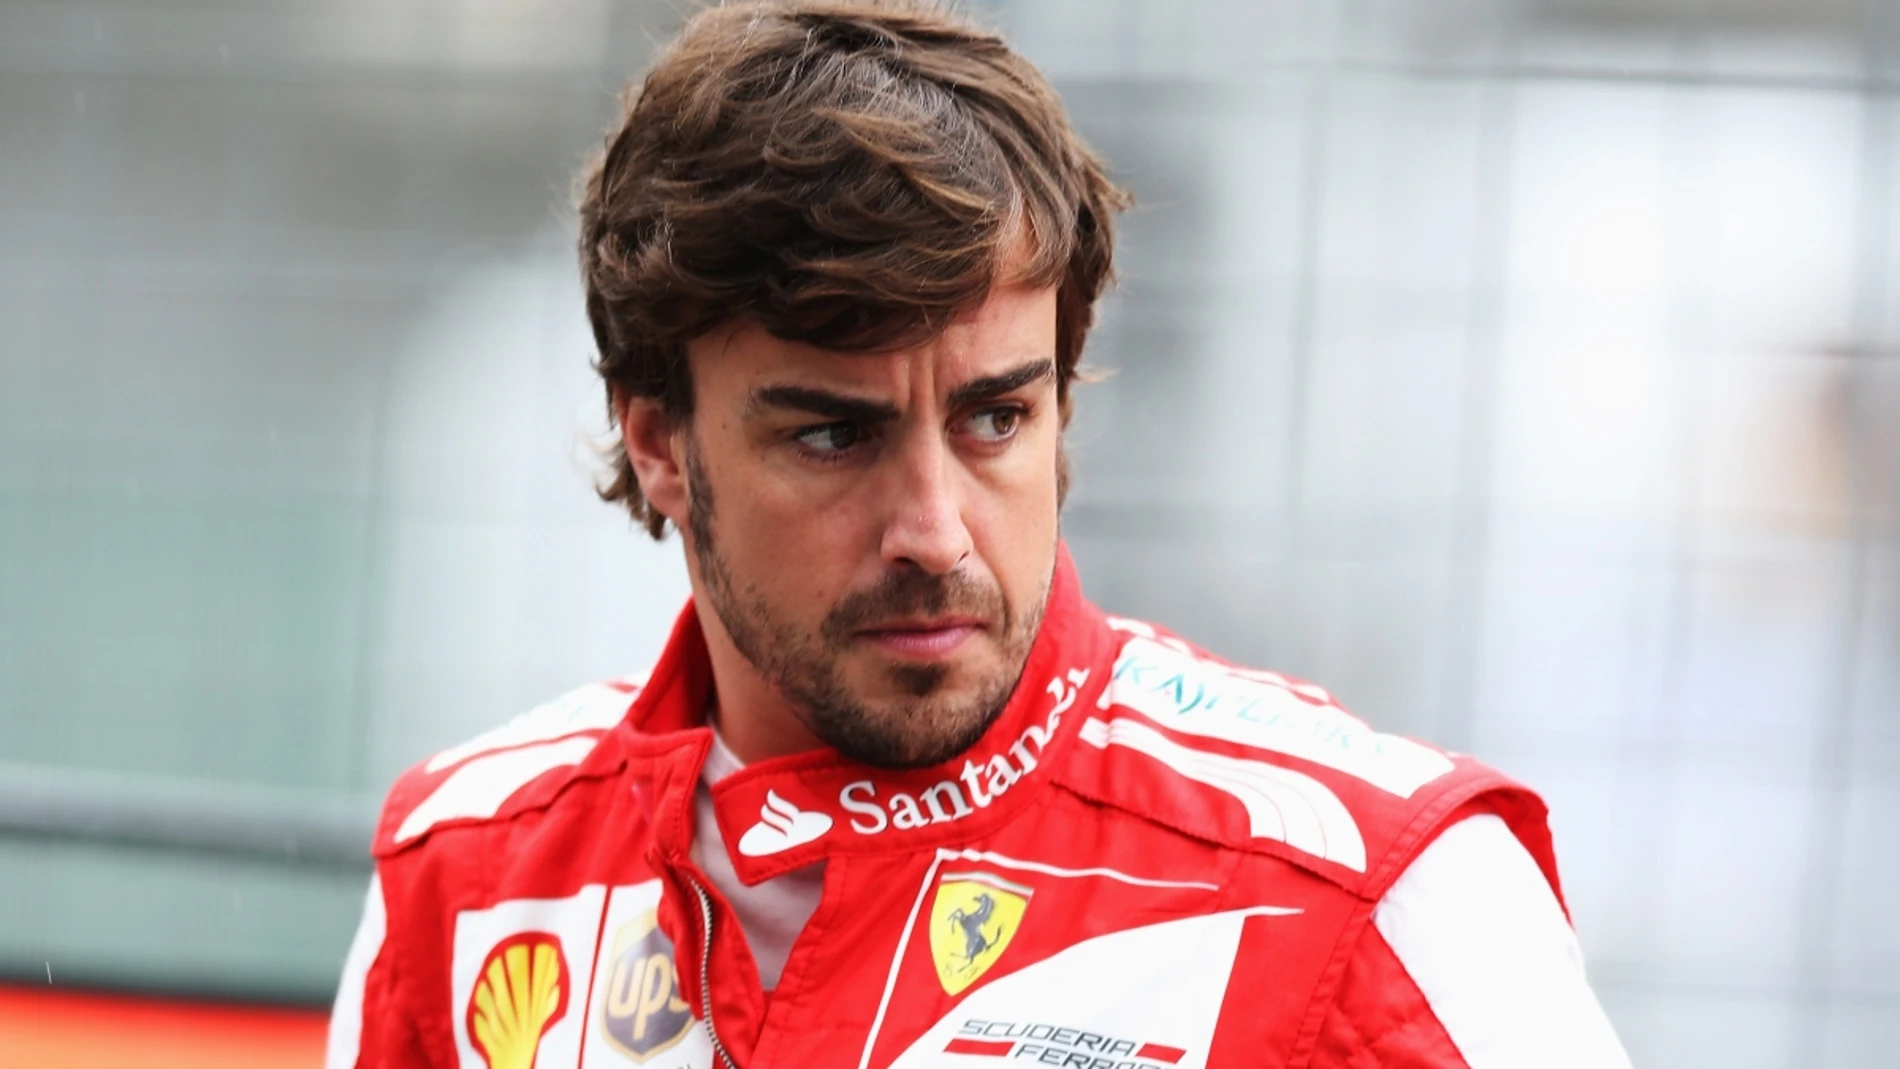 Fernando Alonso, en su época en Ferrari